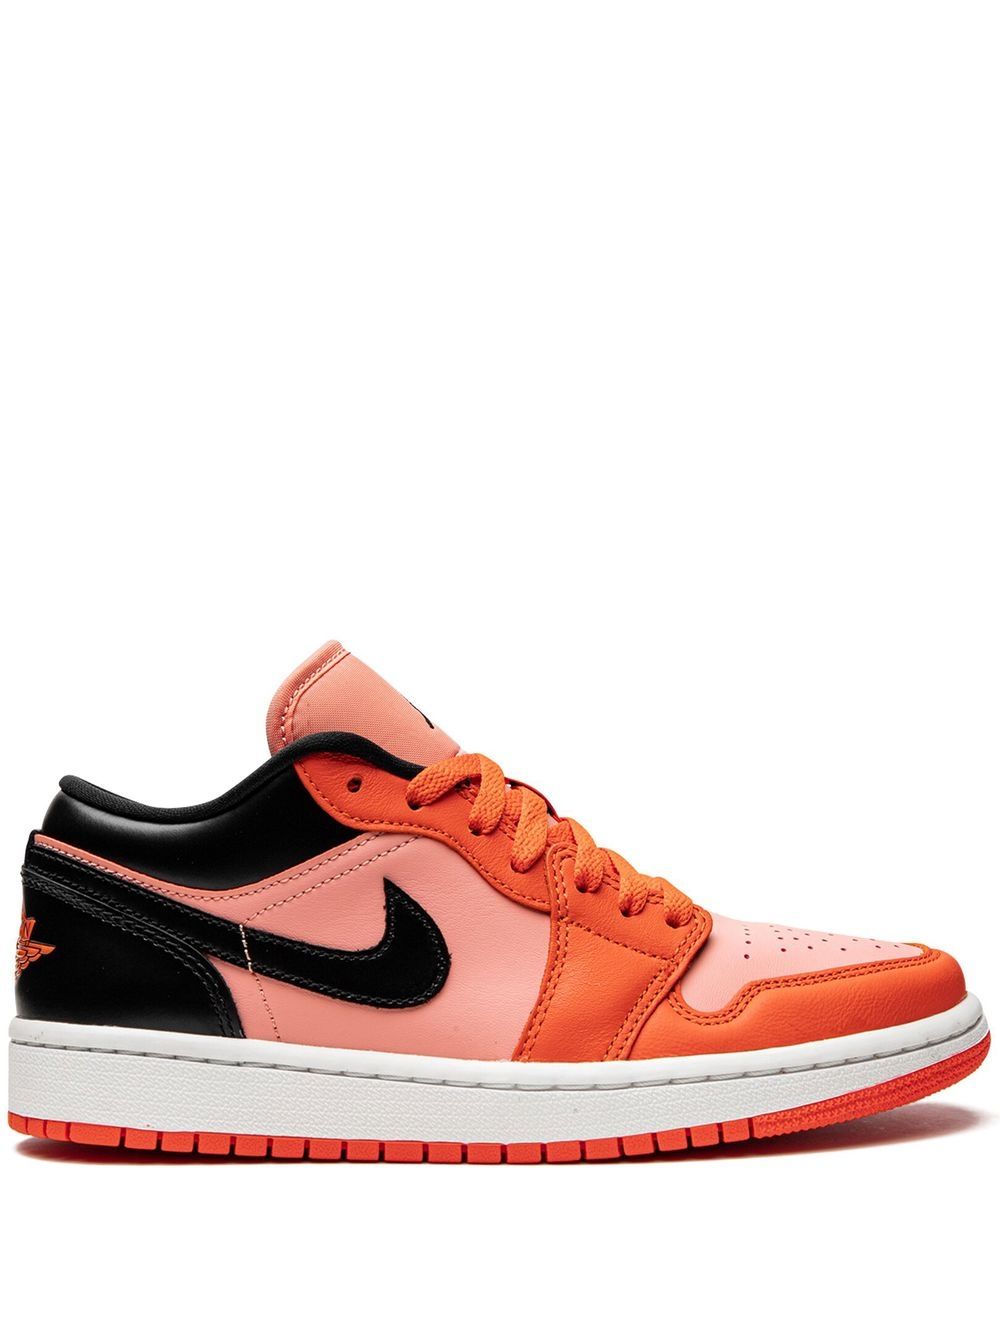 Jordan Jordan 1 Low sneakers - Orange